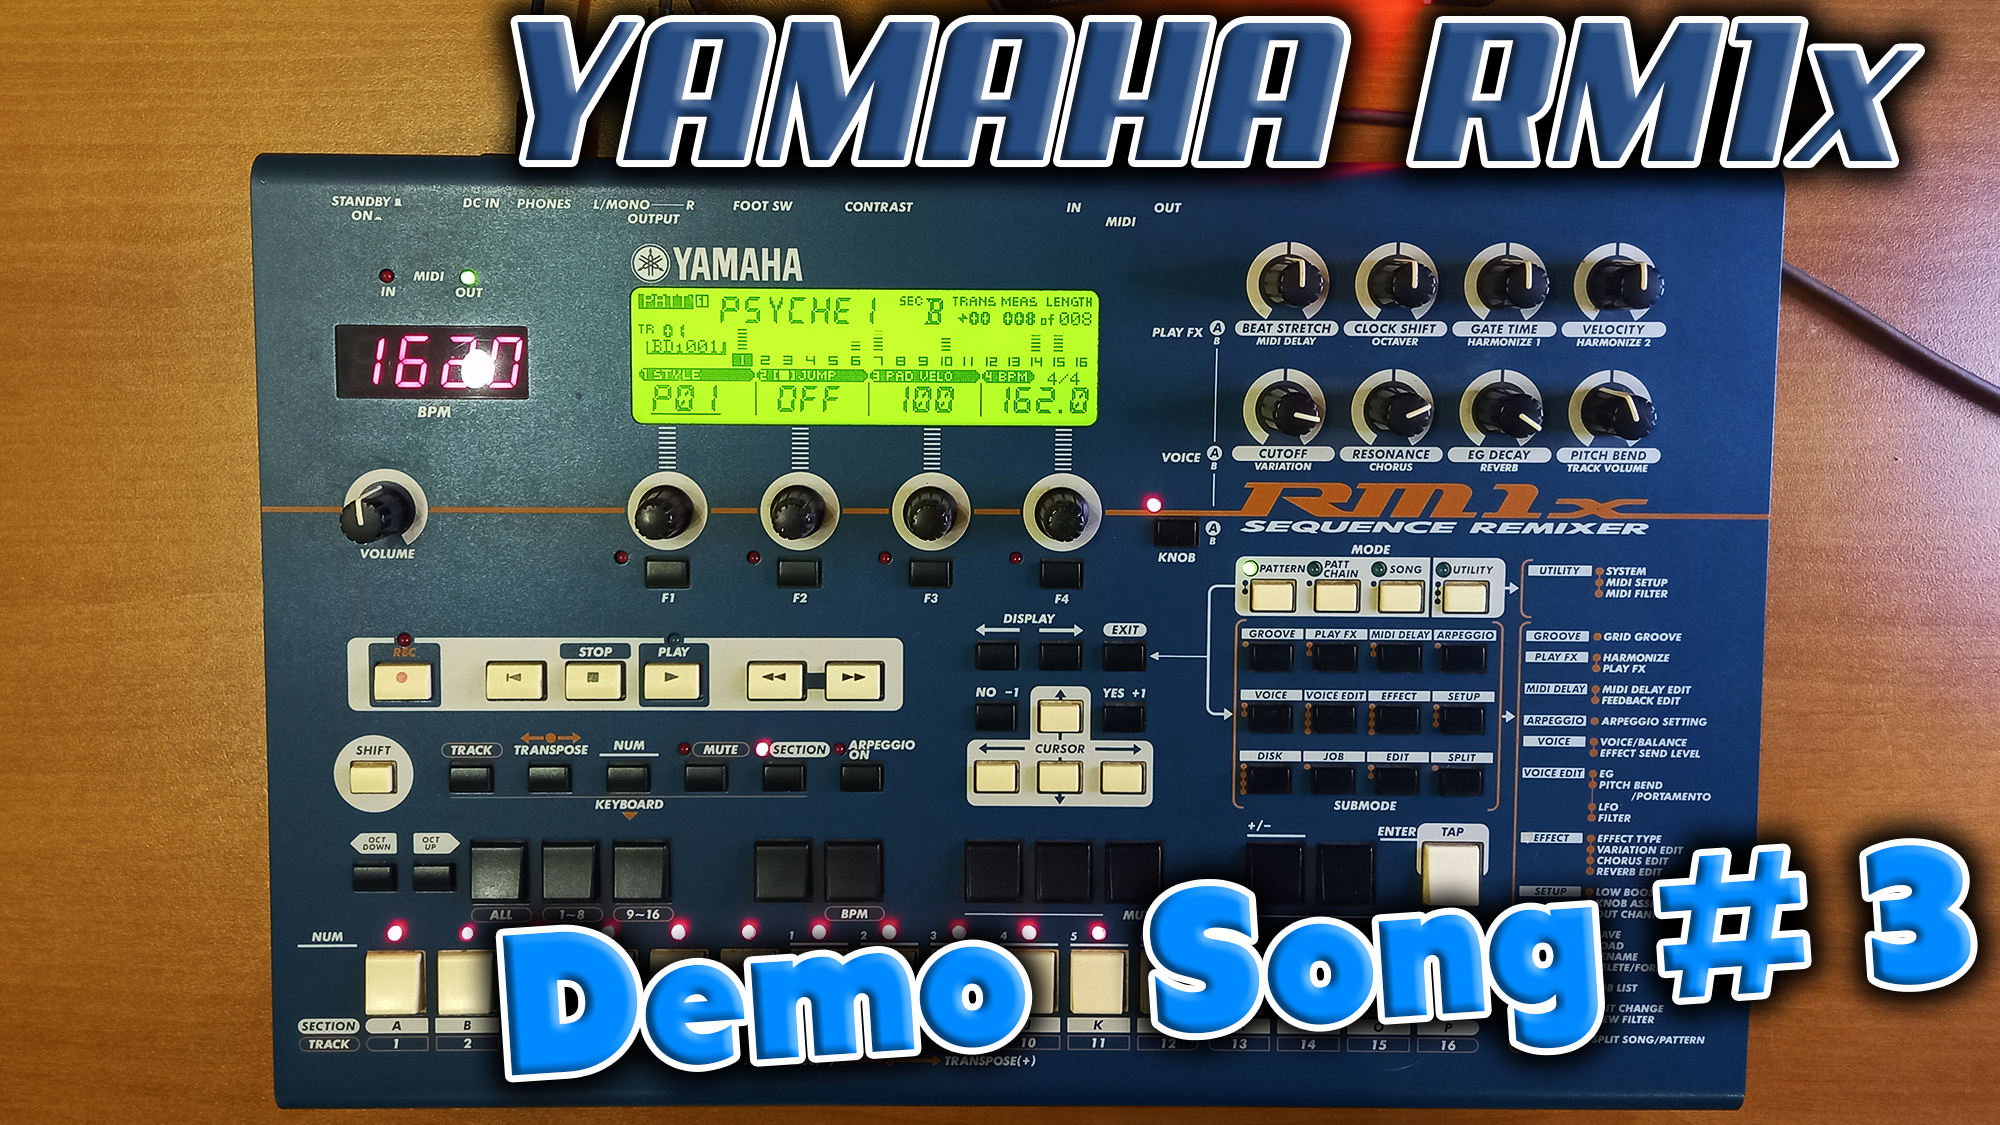 Грувбокс из далёкого 1999 года - Yamaha RM1x !  Слушаем Demo song #3